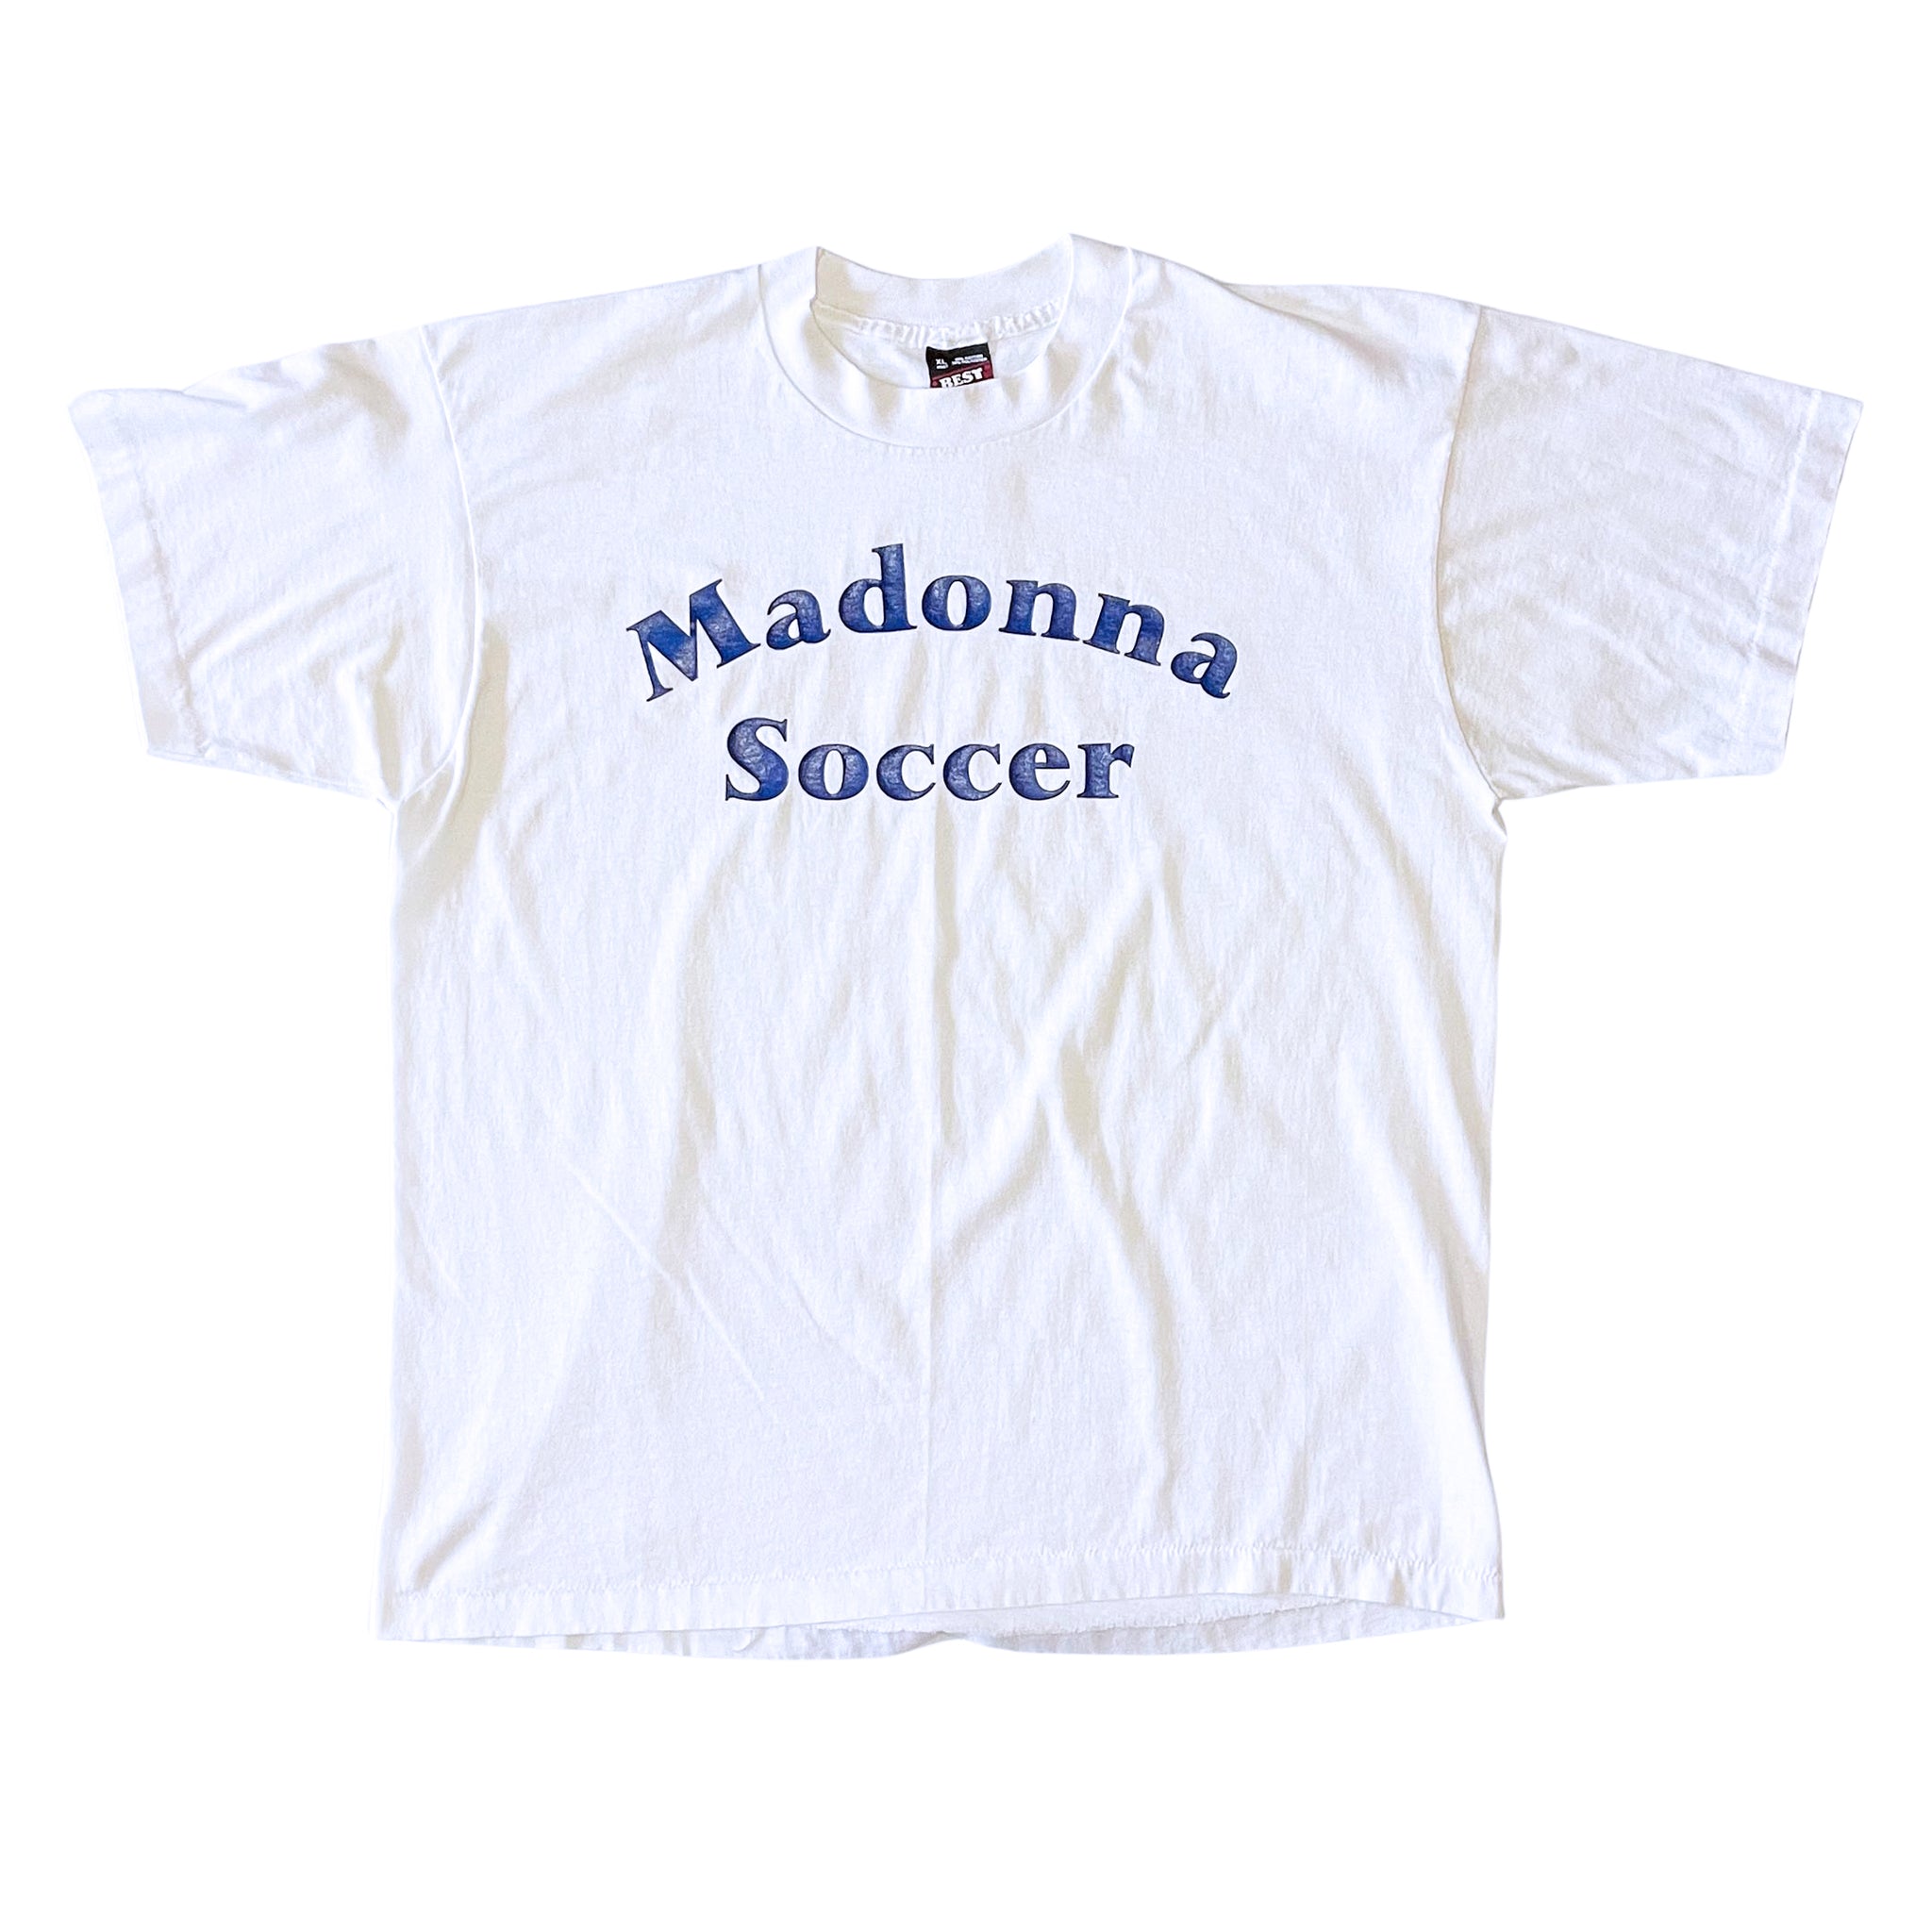 Madonna Soccer T-Shirt - XL